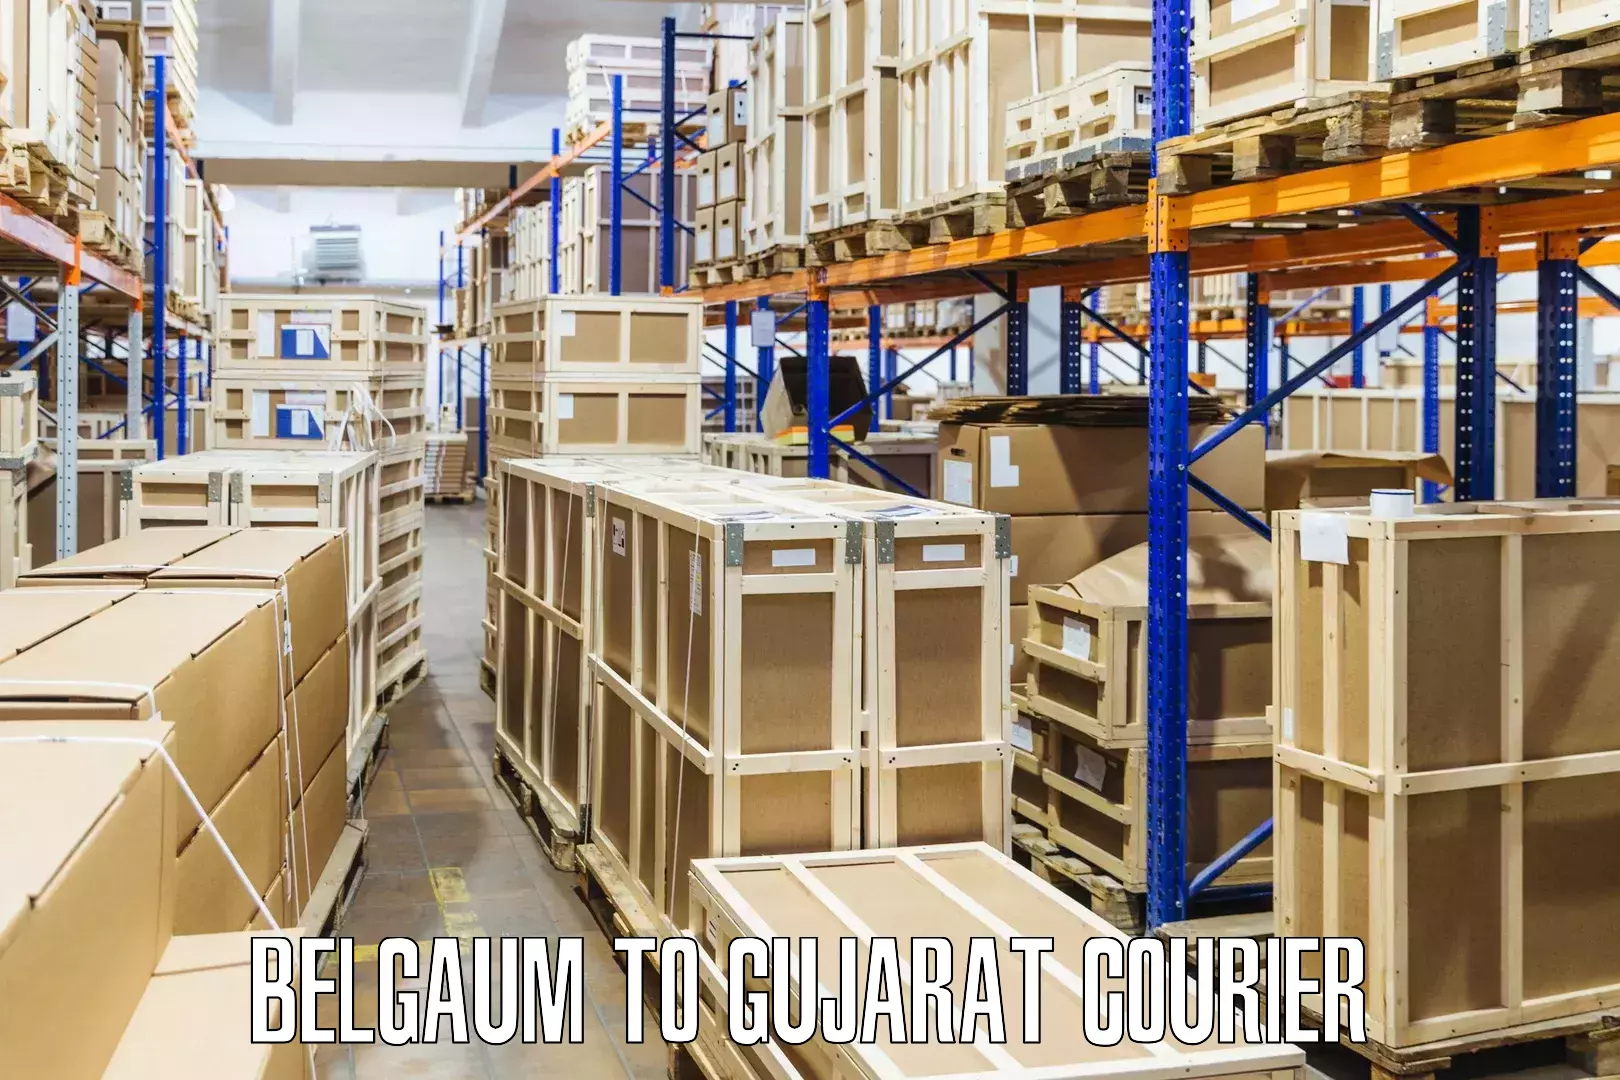 Custom courier rates Belgaum to Godhra